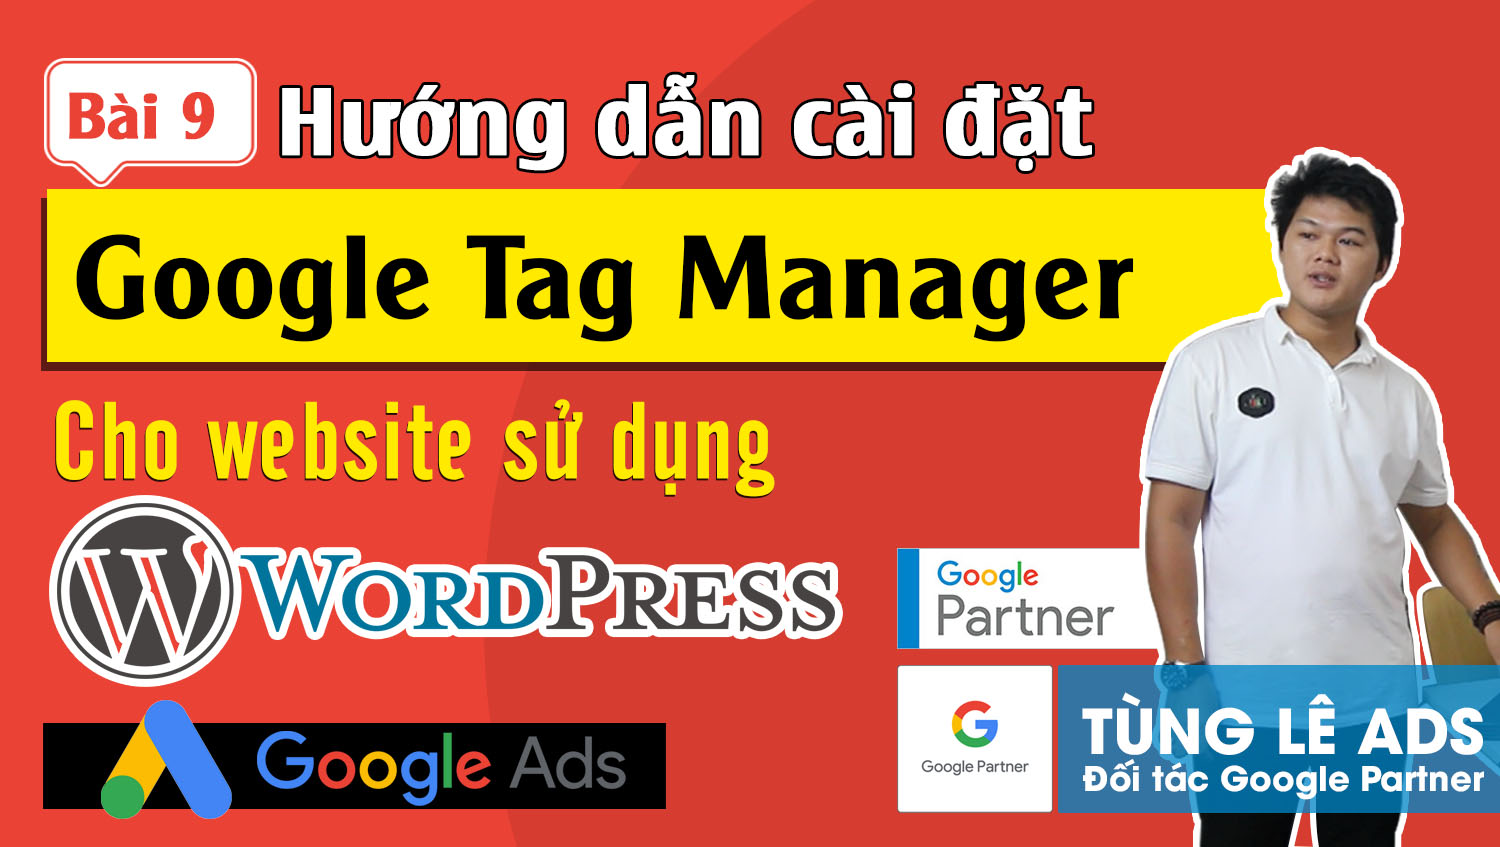 Hướng dẫn cài đặt mã Google Tag Manager cho trang WordPress #9